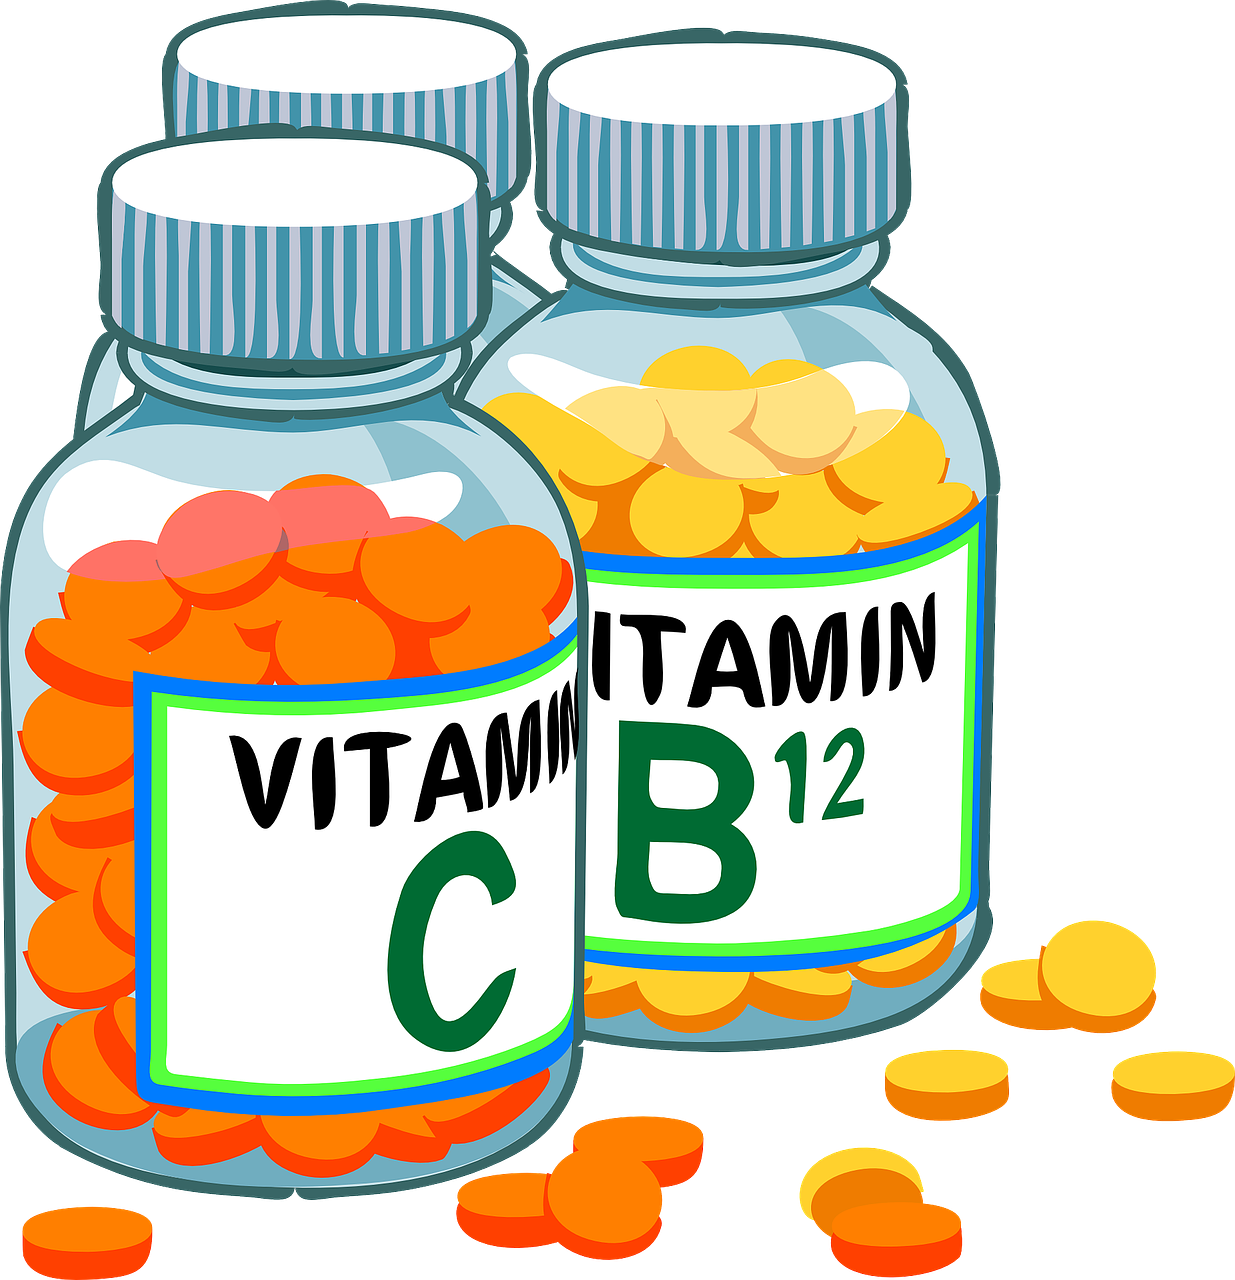 비타민 C 부족 3